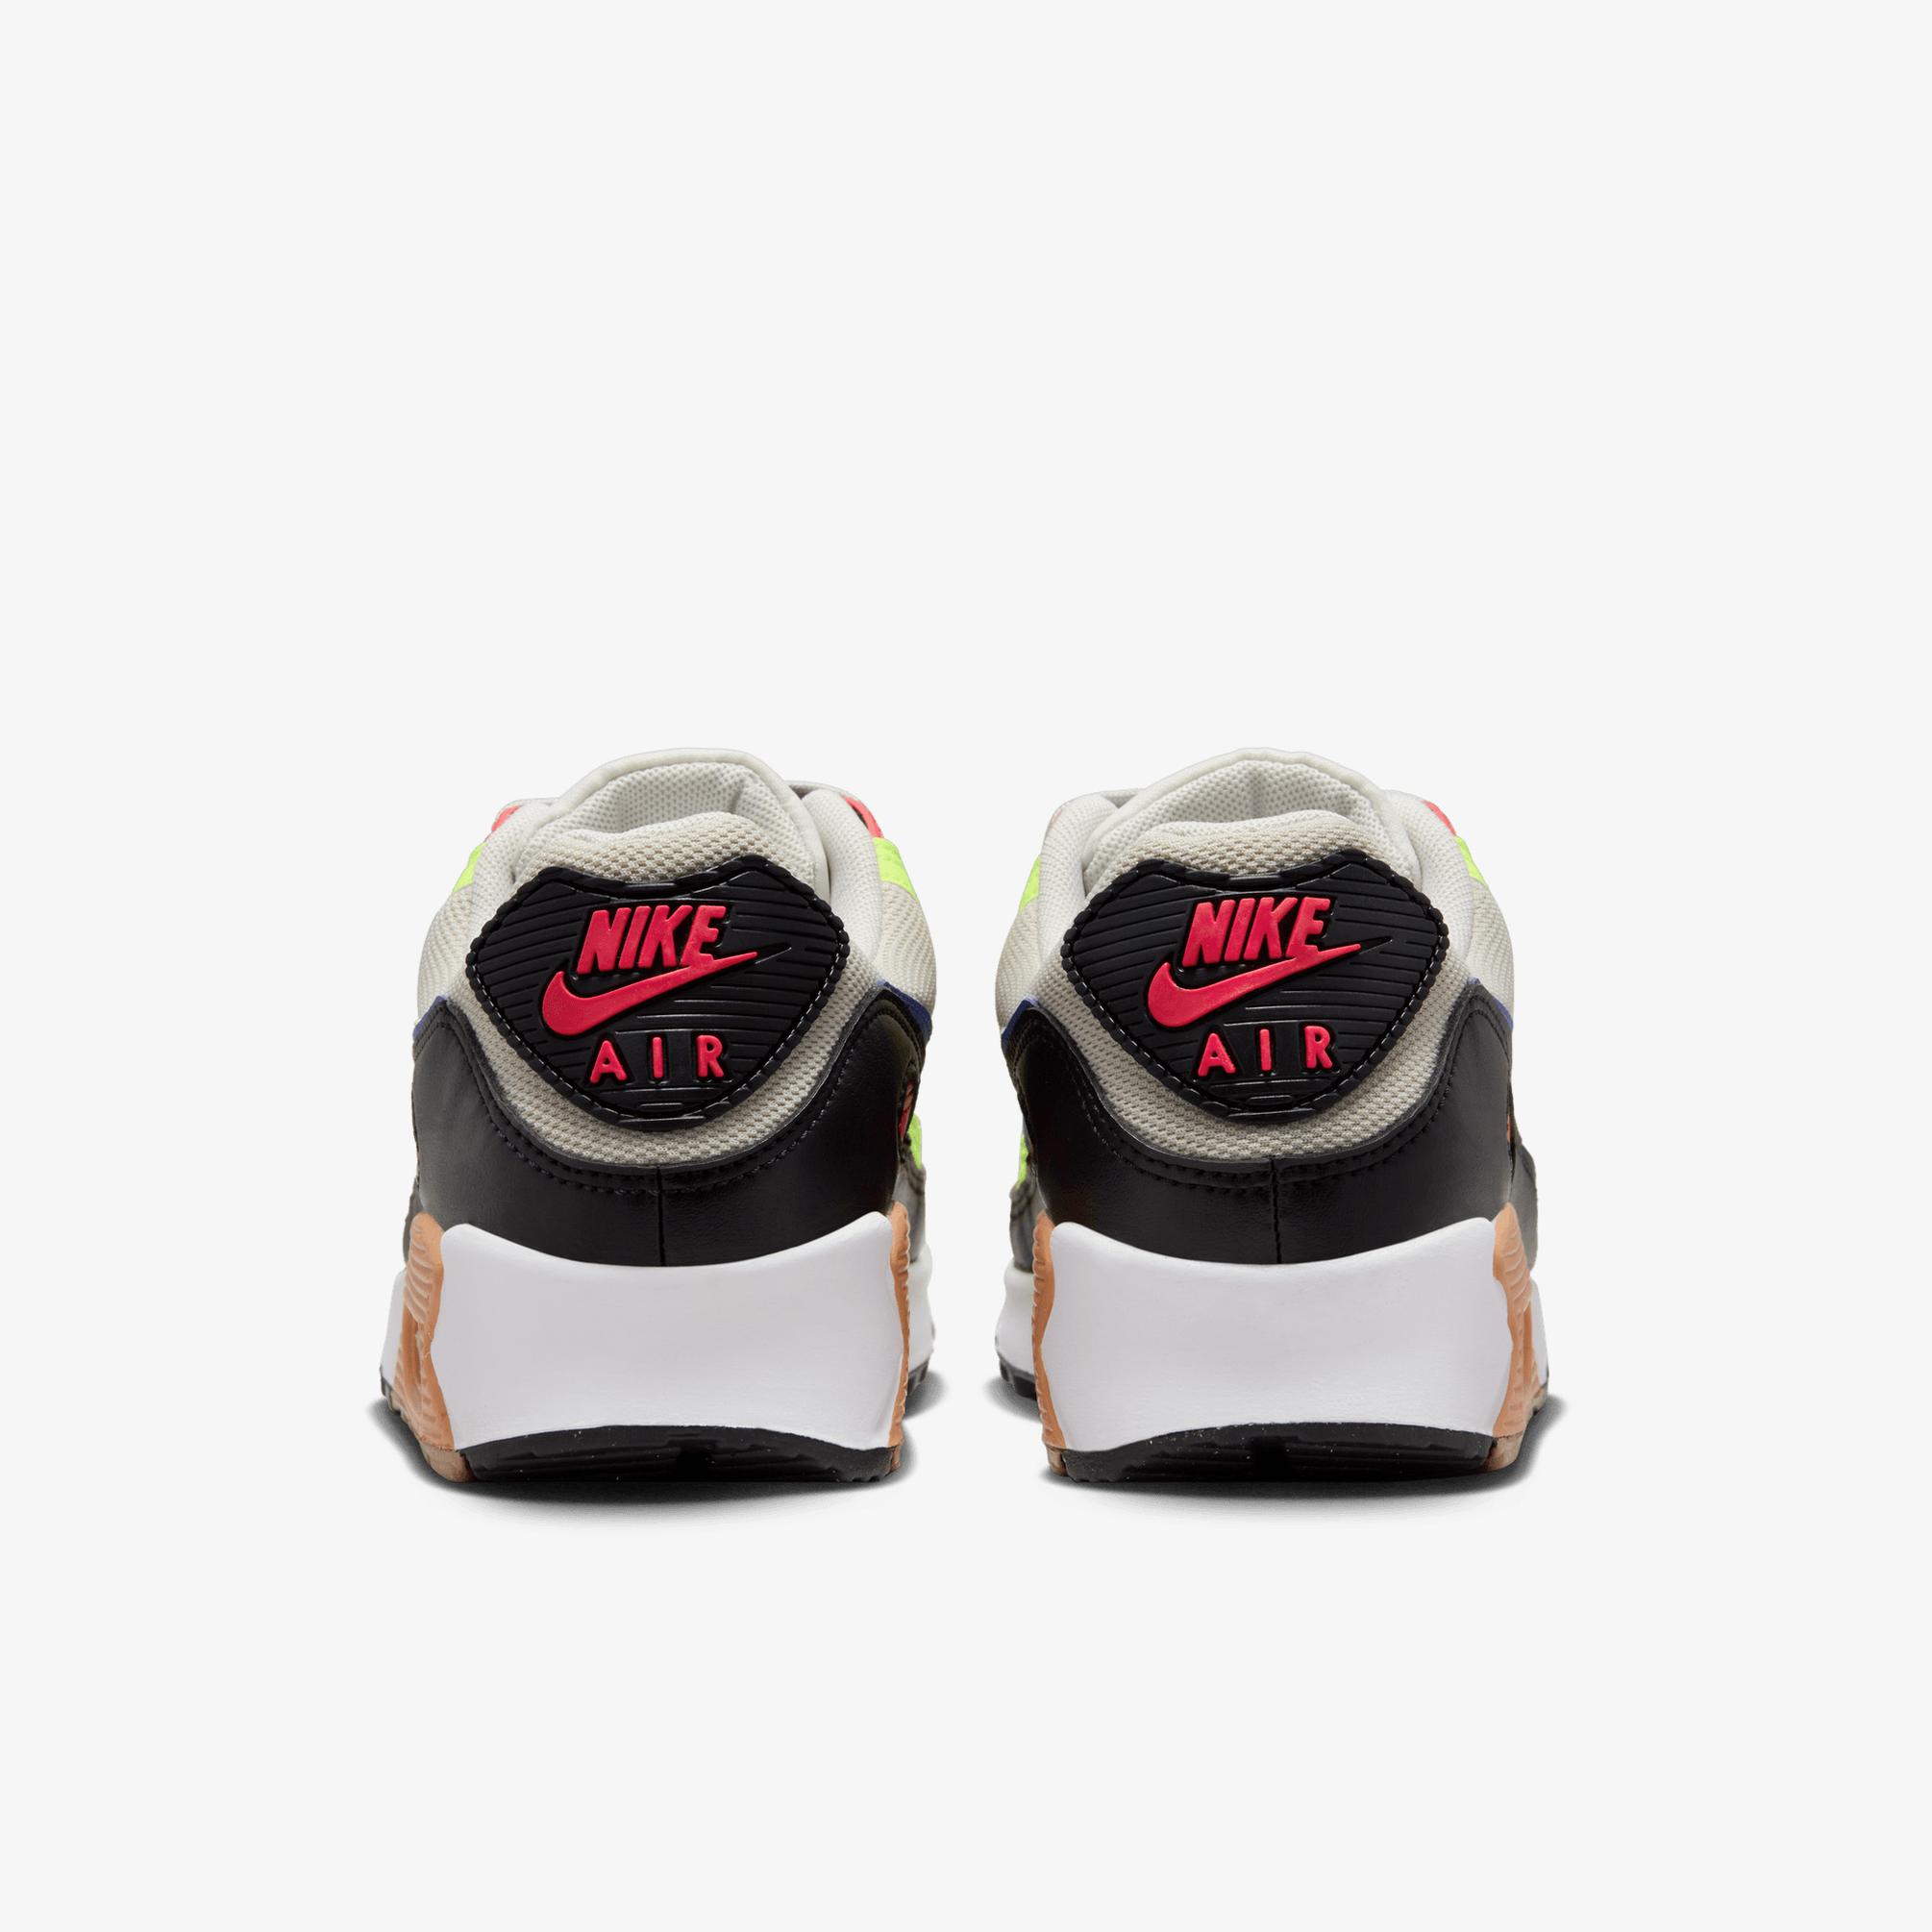  Nike Air Max 90 Kadın Renkli Spor Ayakkabı